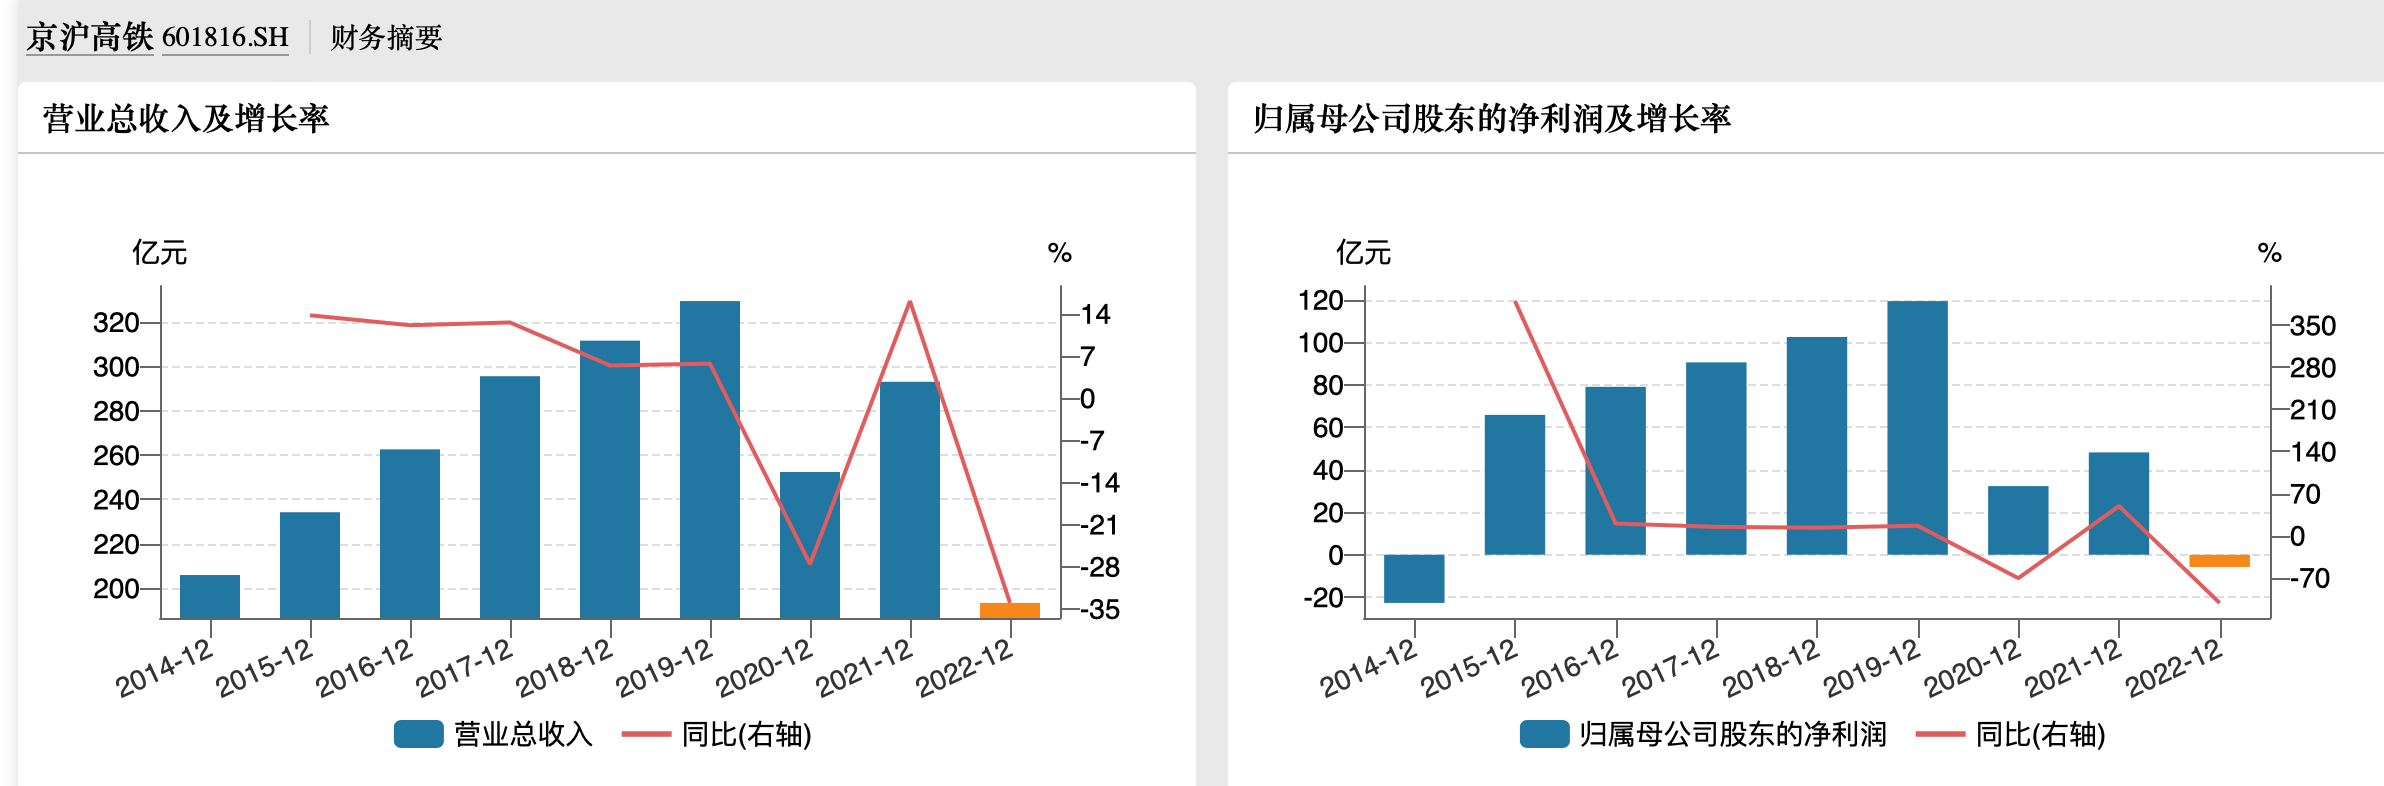 京沪高铁去年亏损近6亿 今年一季度净利暴增9倍 恢复至疫情前水平